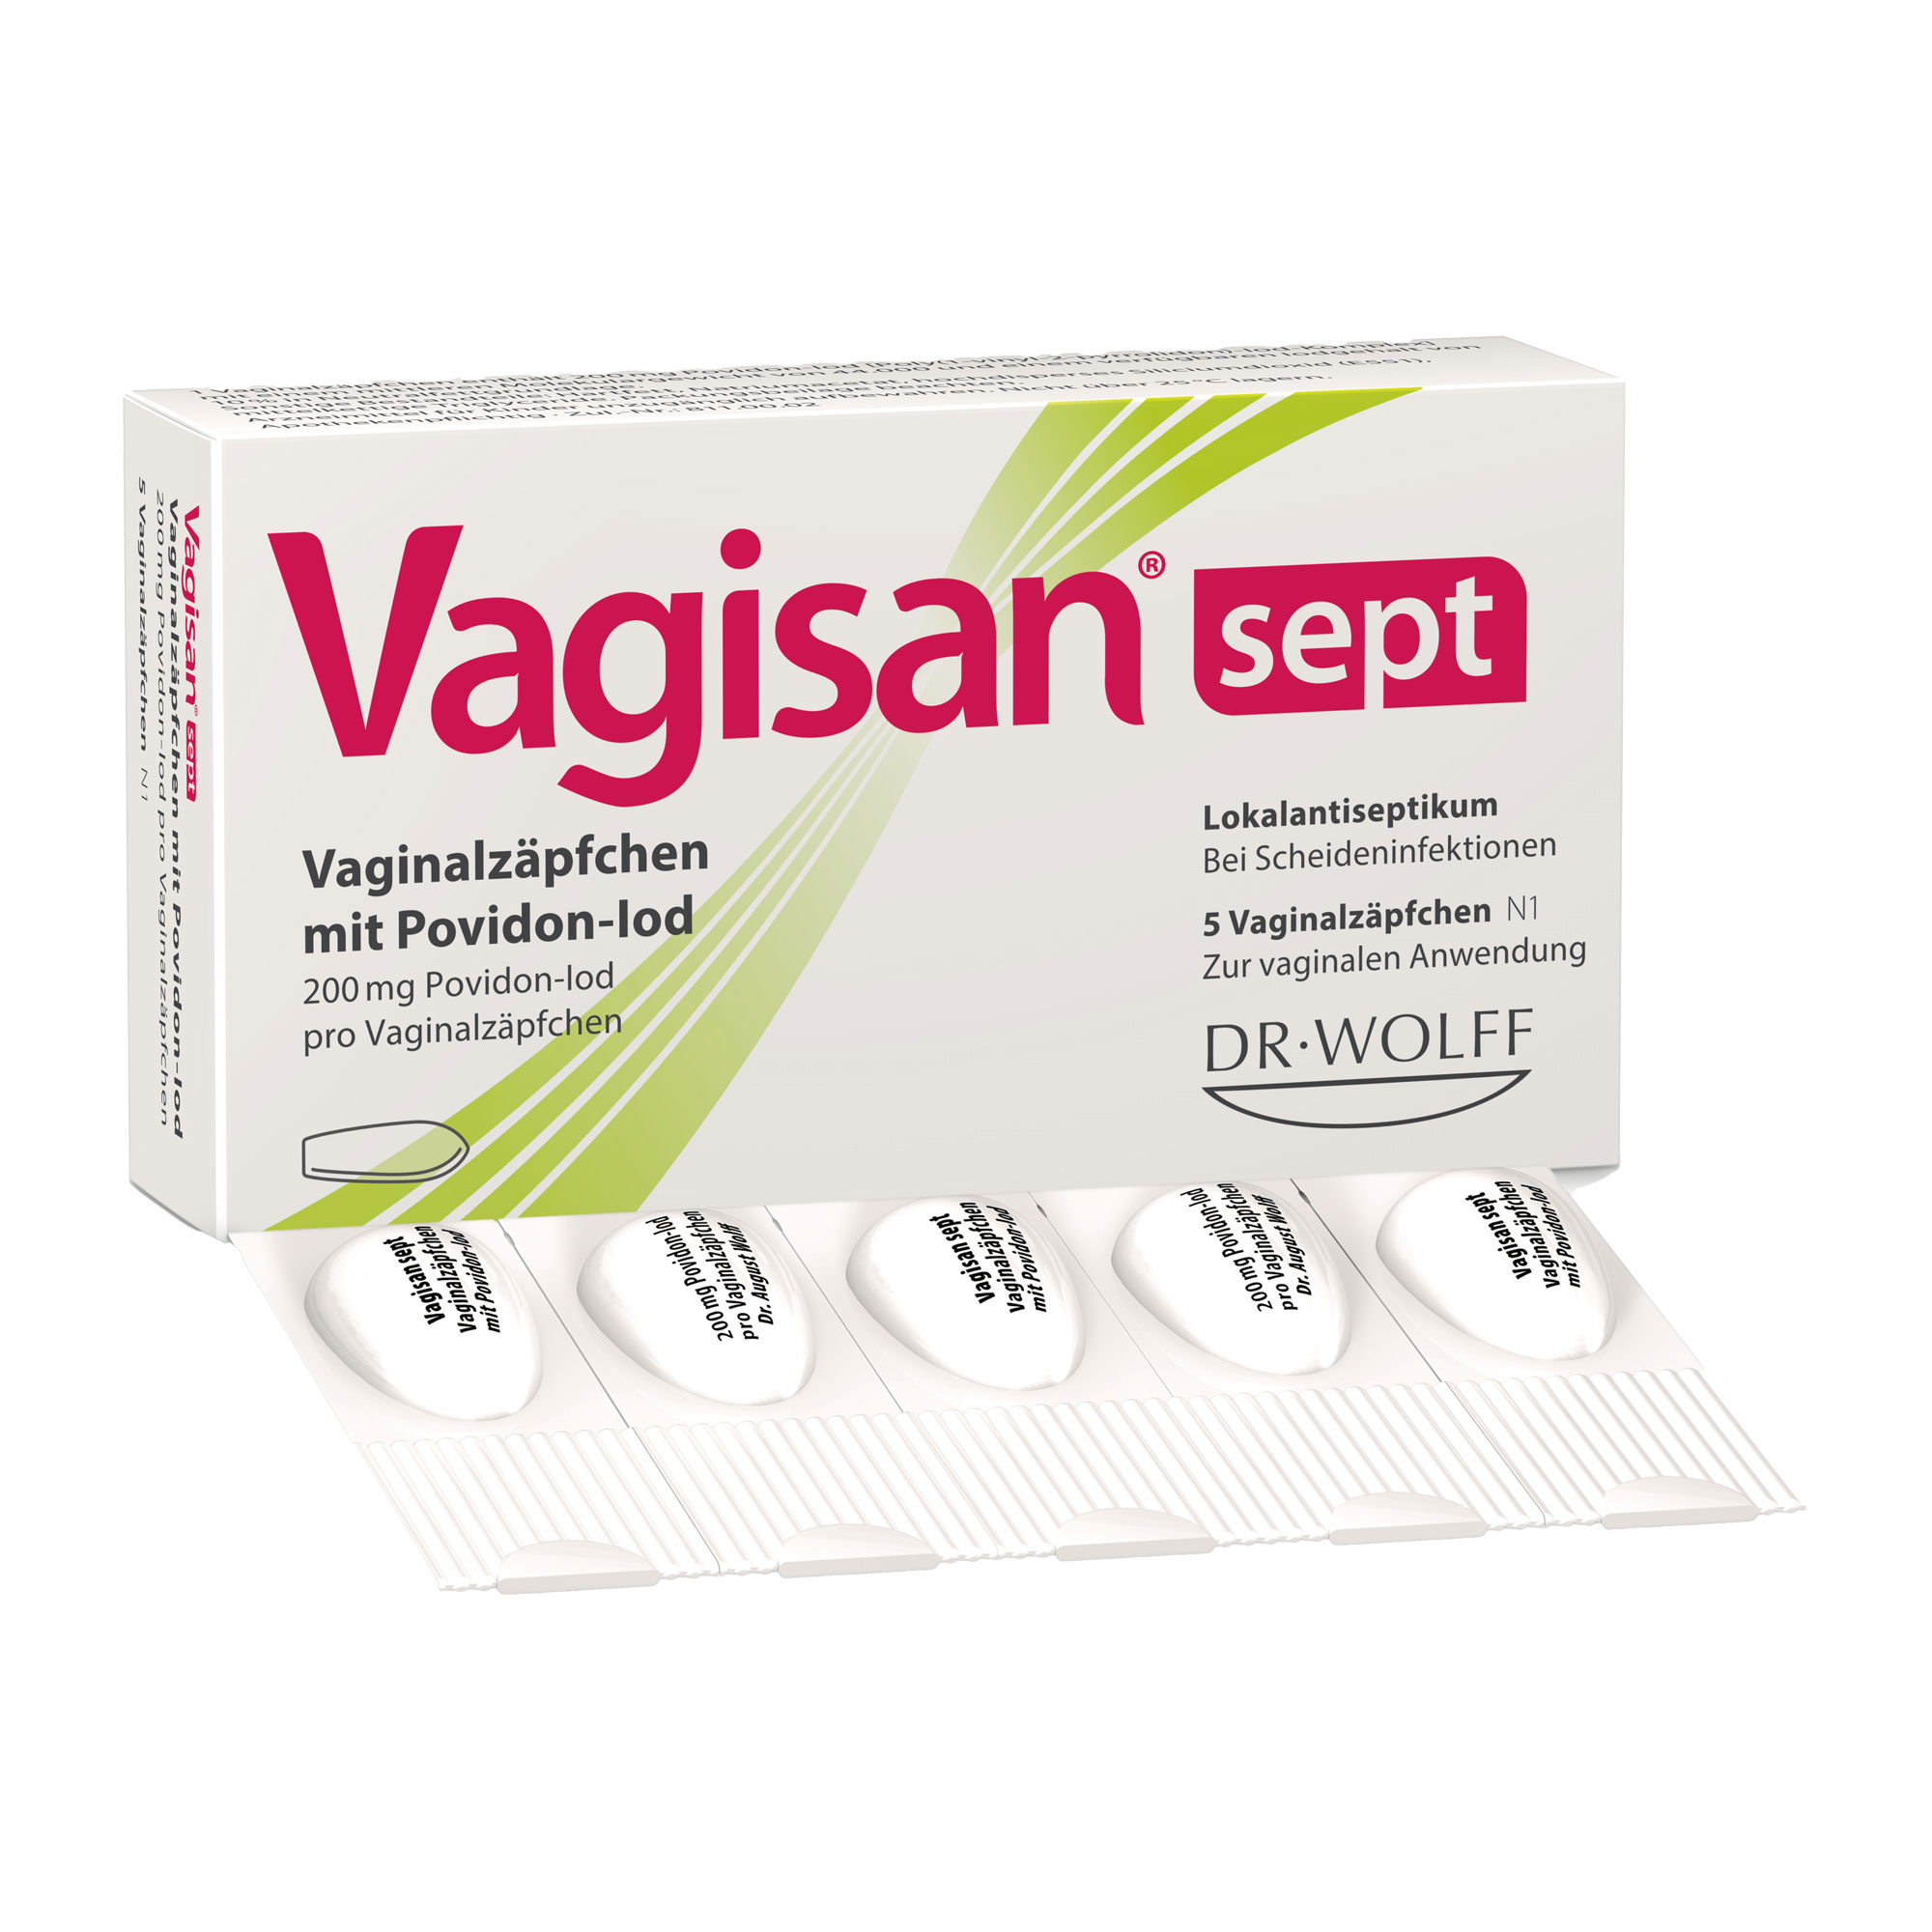 Desinfizierende Vaginalzäpfchen zur Anwendung bei spezifischen und unspezifischen Infektionen der Scheide und bei Scheideninfektionen.